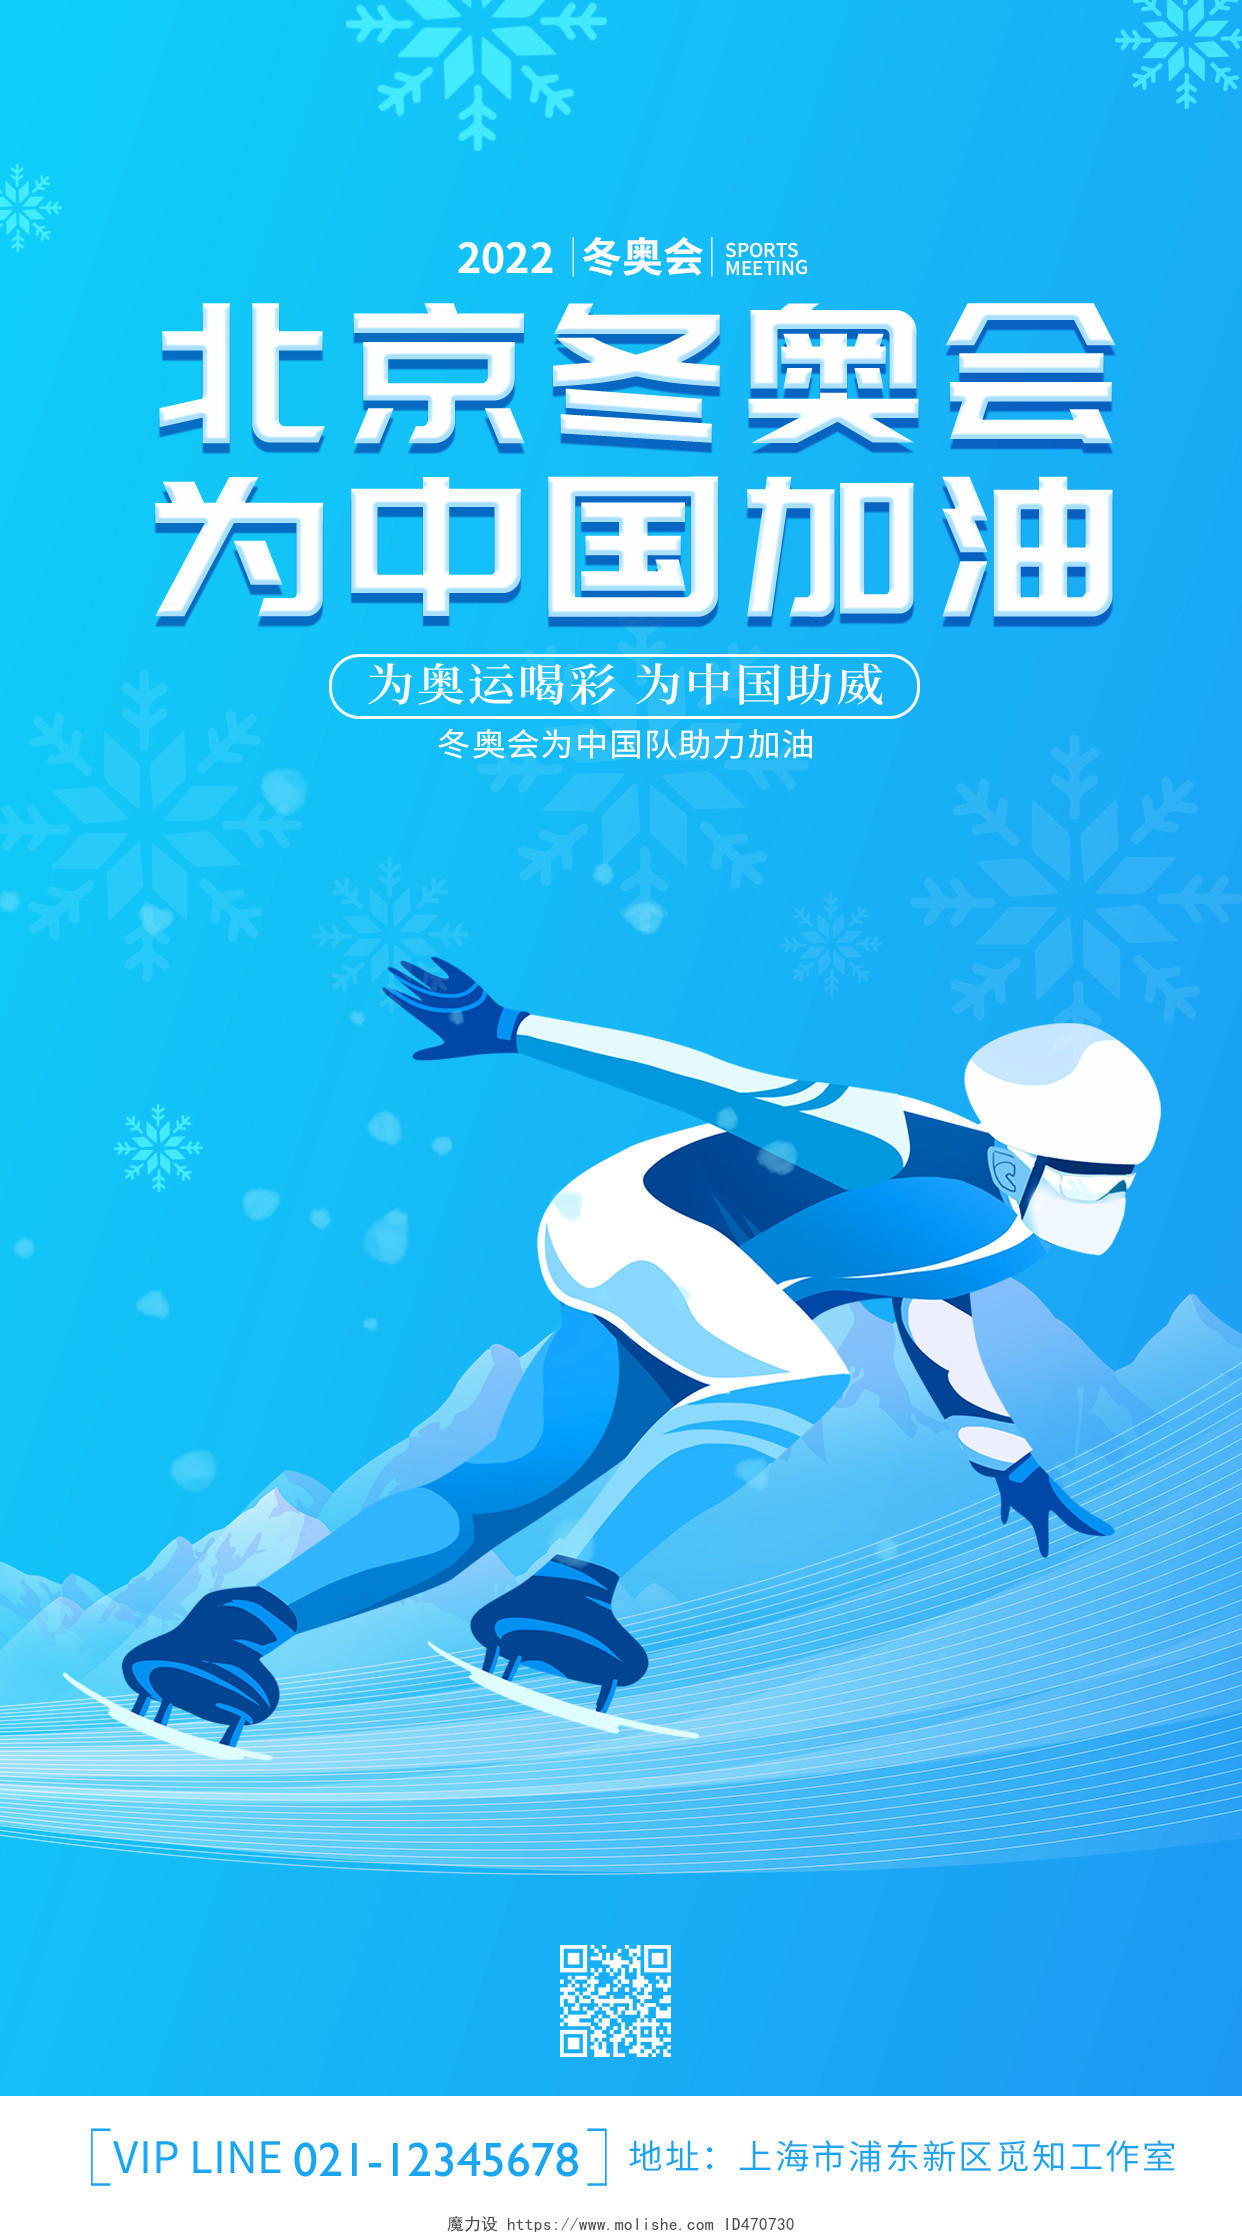 蓝色创意卡通简约大气2022北京冬奥会ui手机宣传海报冬奥会手机宣传海报